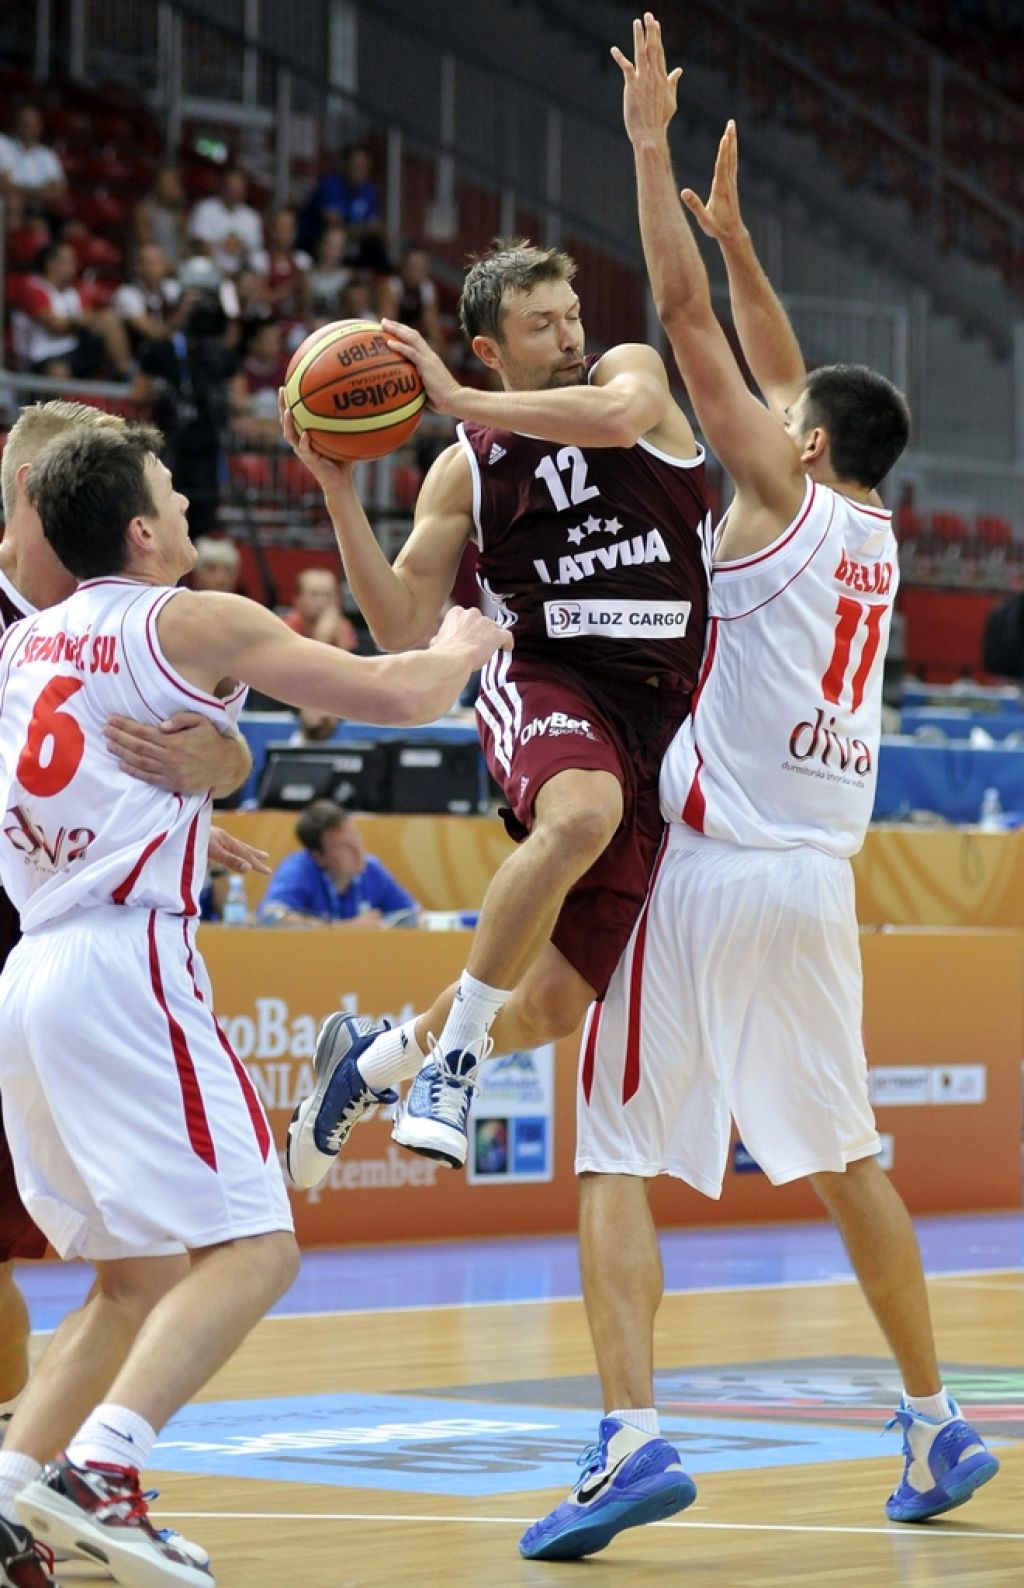 Eurobasket, skupina B - Srbija prek Bosne in Hercegovine do druge zmage